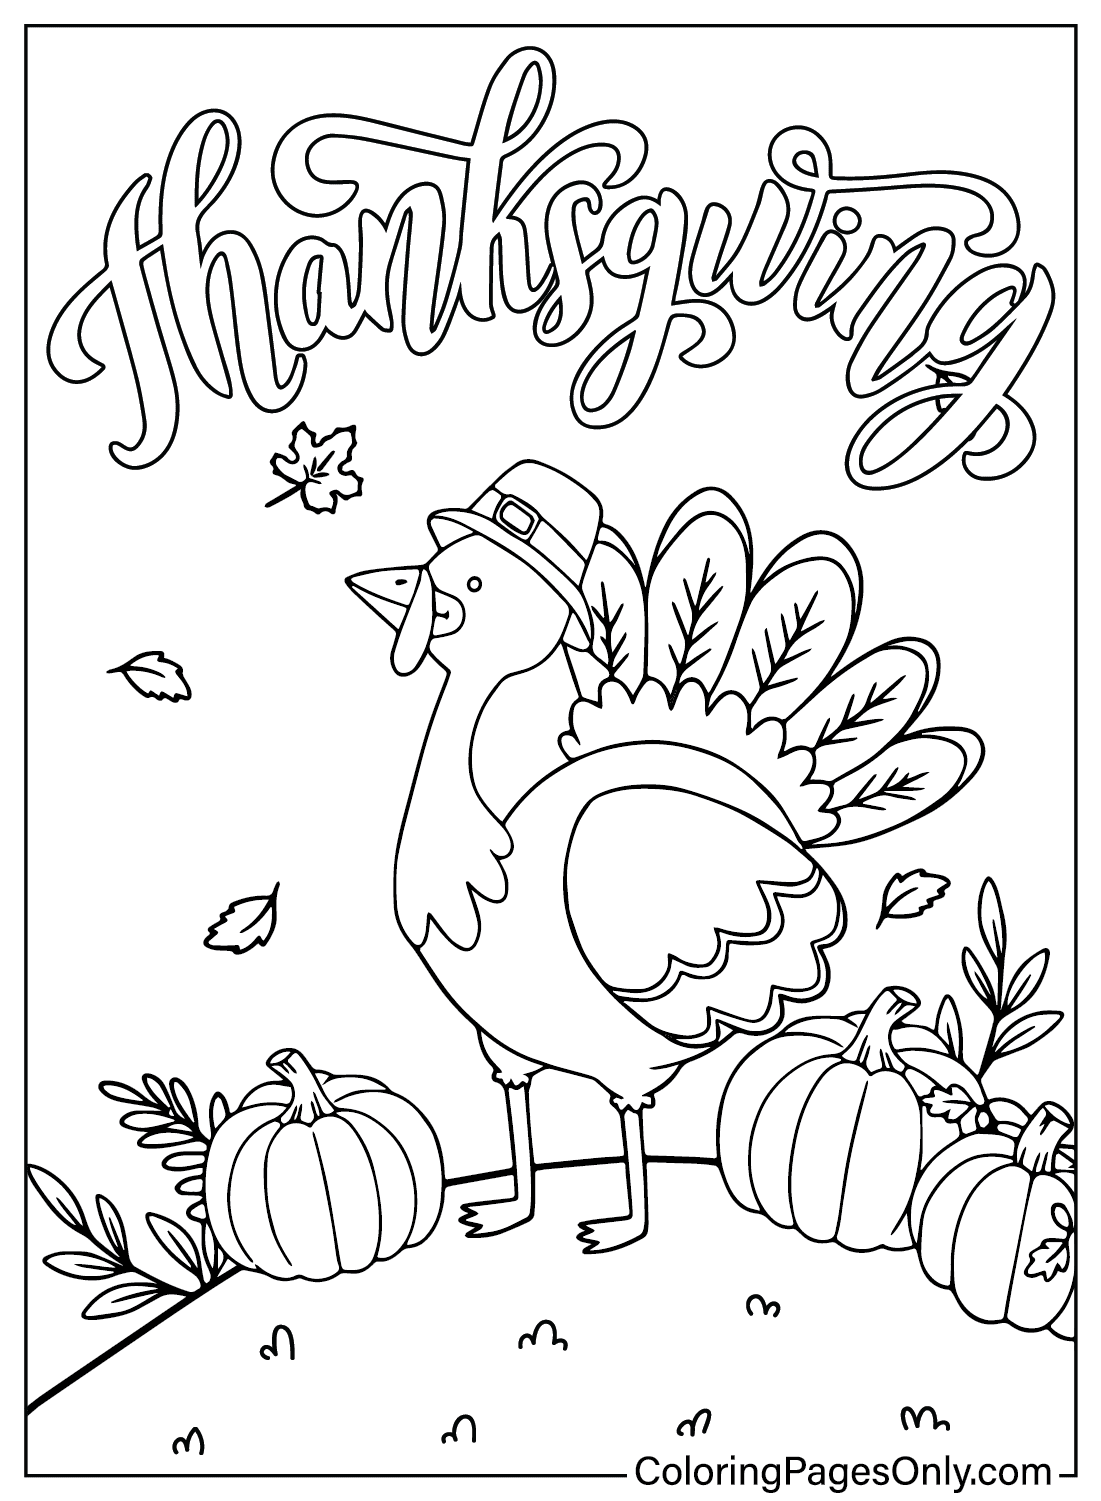 Página para colorear de dibujos animados de Acción de Gracias gratis de Dibujos animados de Acción de Gracias